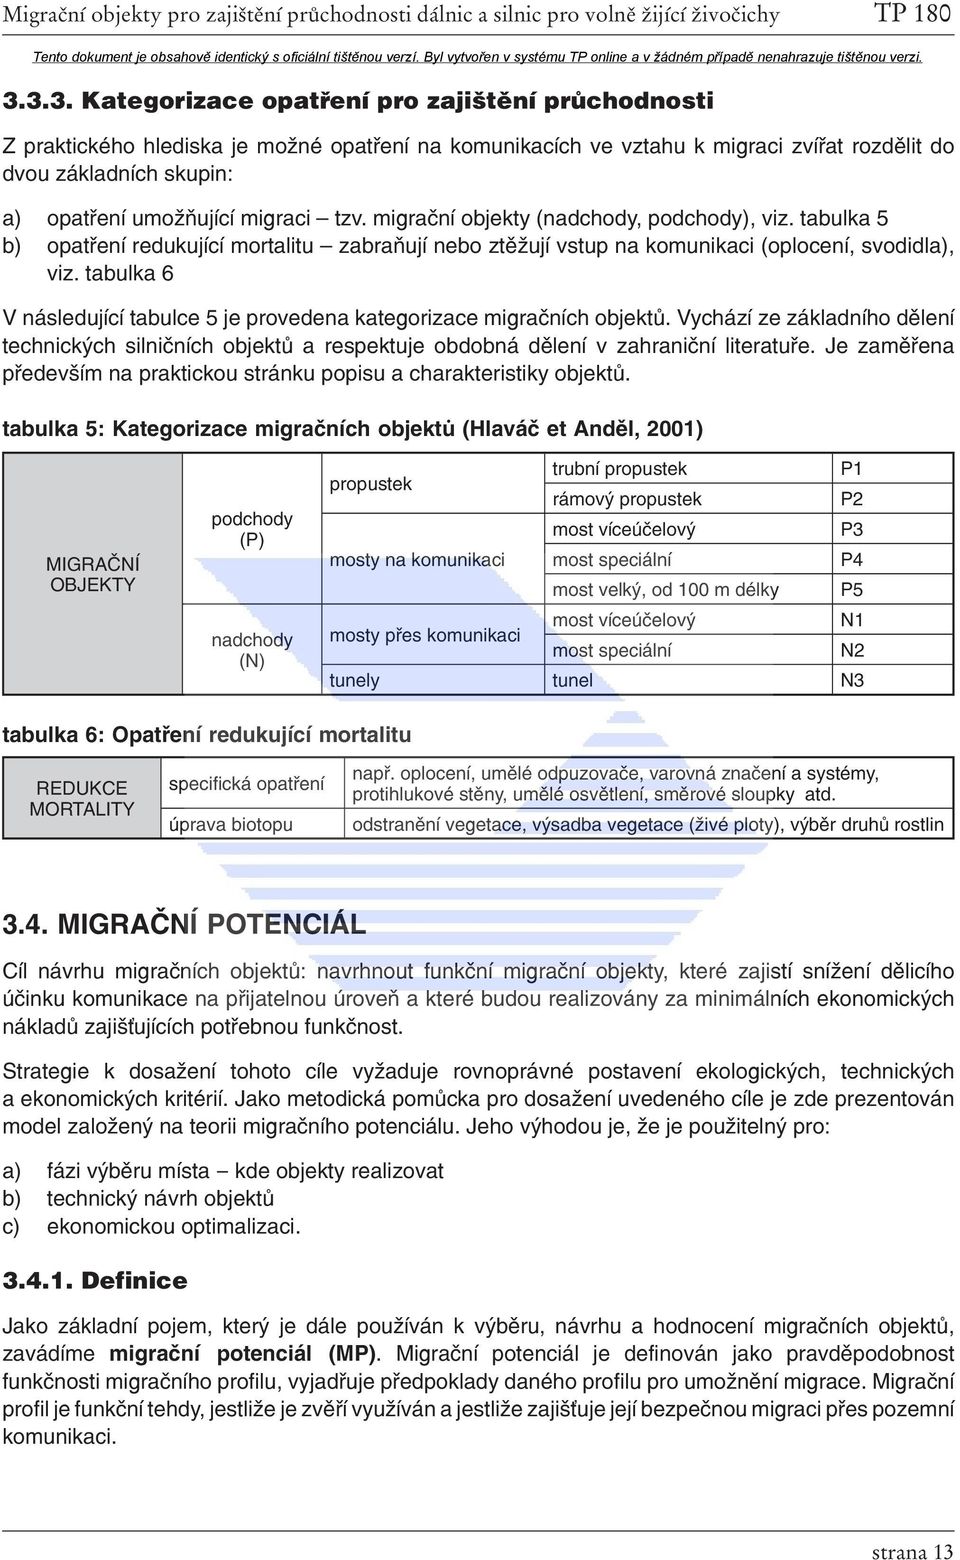 tabulka 6 V následující tabulce 5 je provedena kategorizace migračních objektů. Vychází ze základního dělení technických silničních objektů a respektuje obdobná dělení v zahraniční literatuře.